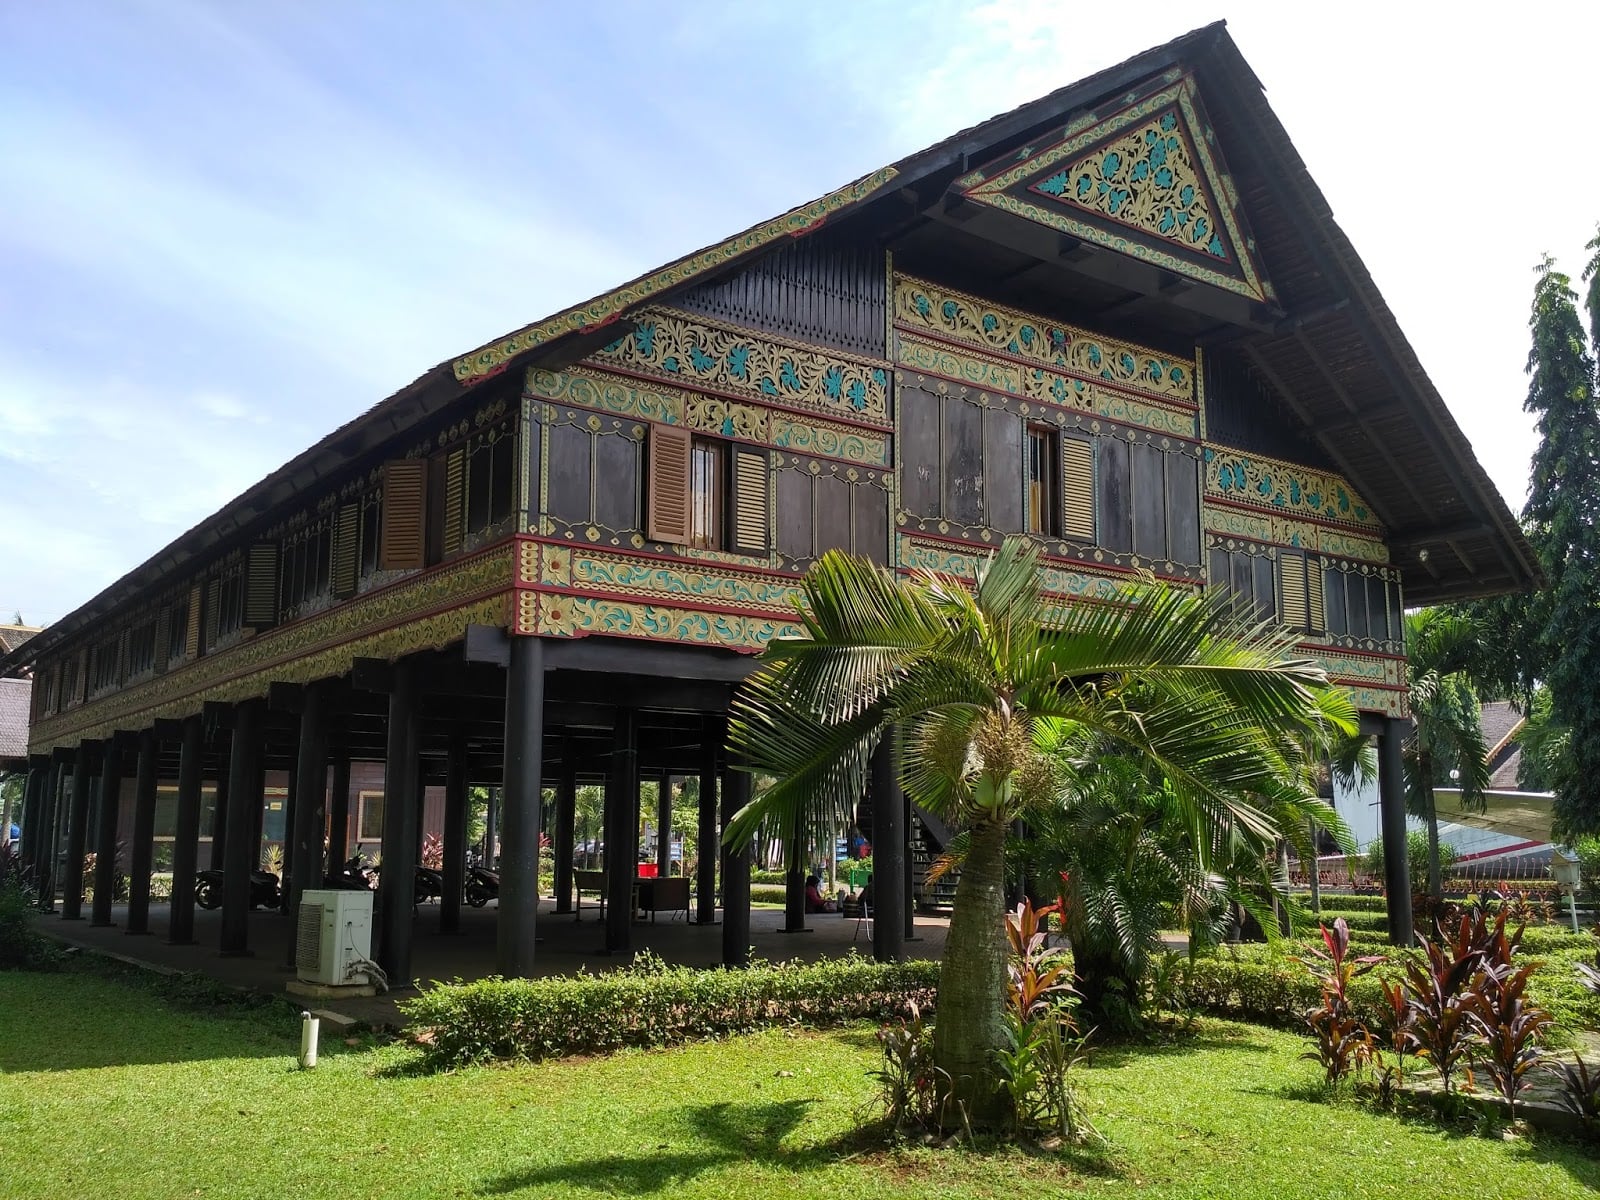 Imut 21 Gambar Rumah Adat Sumatera Selatan 72 Ide Desain Interior Untuk Desain Rumah dengan 21 Gambar Rumah Adat Sumatera Selatan